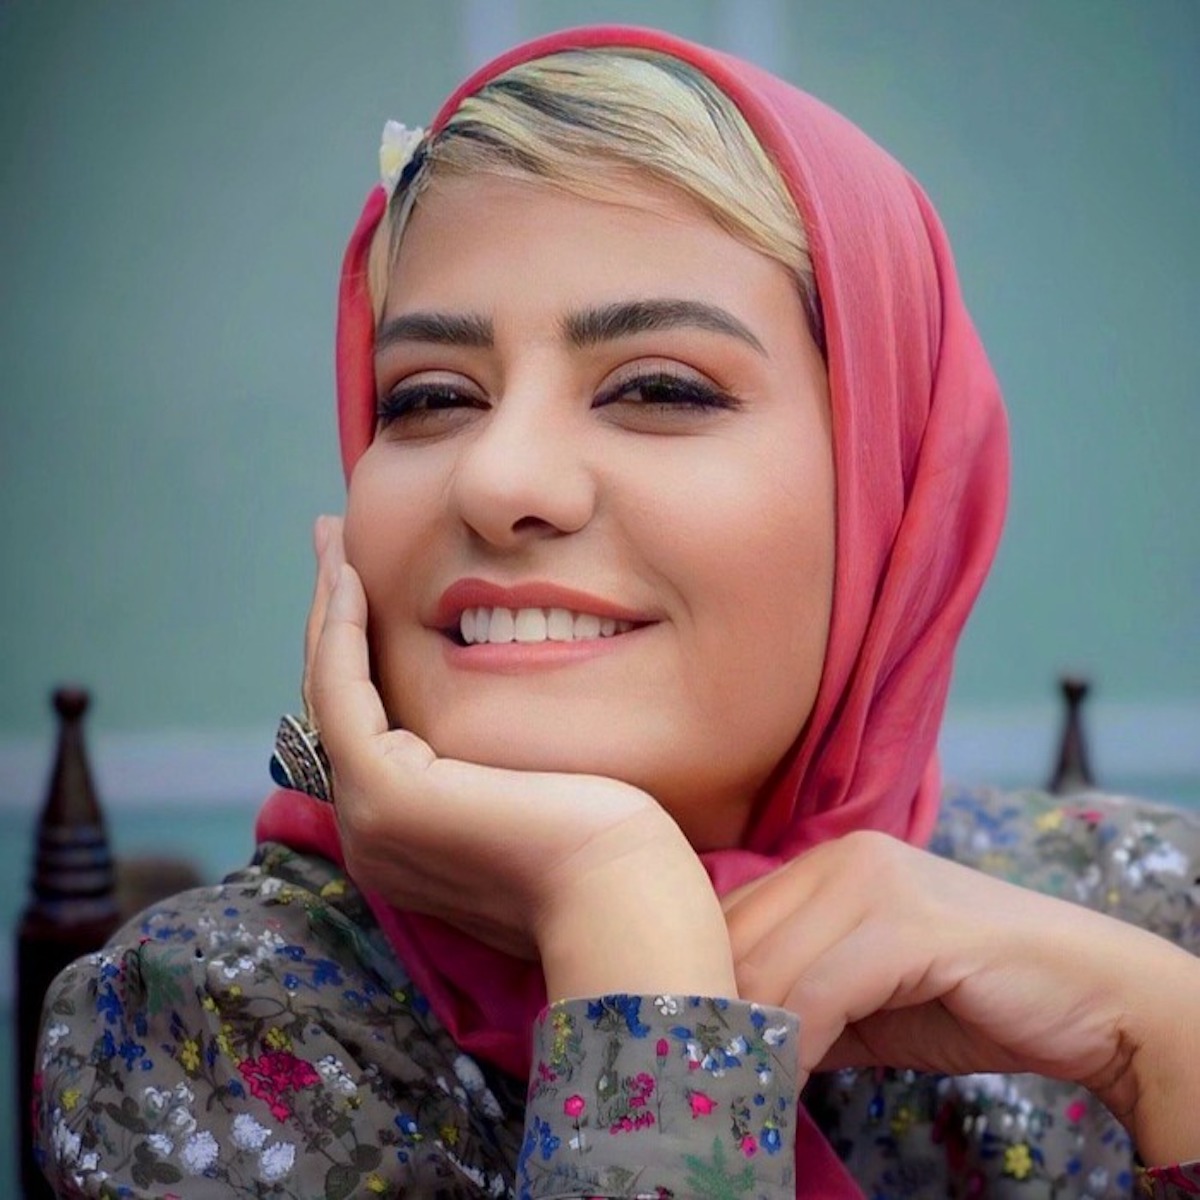 زیباترین بازیگران زن ایرانی